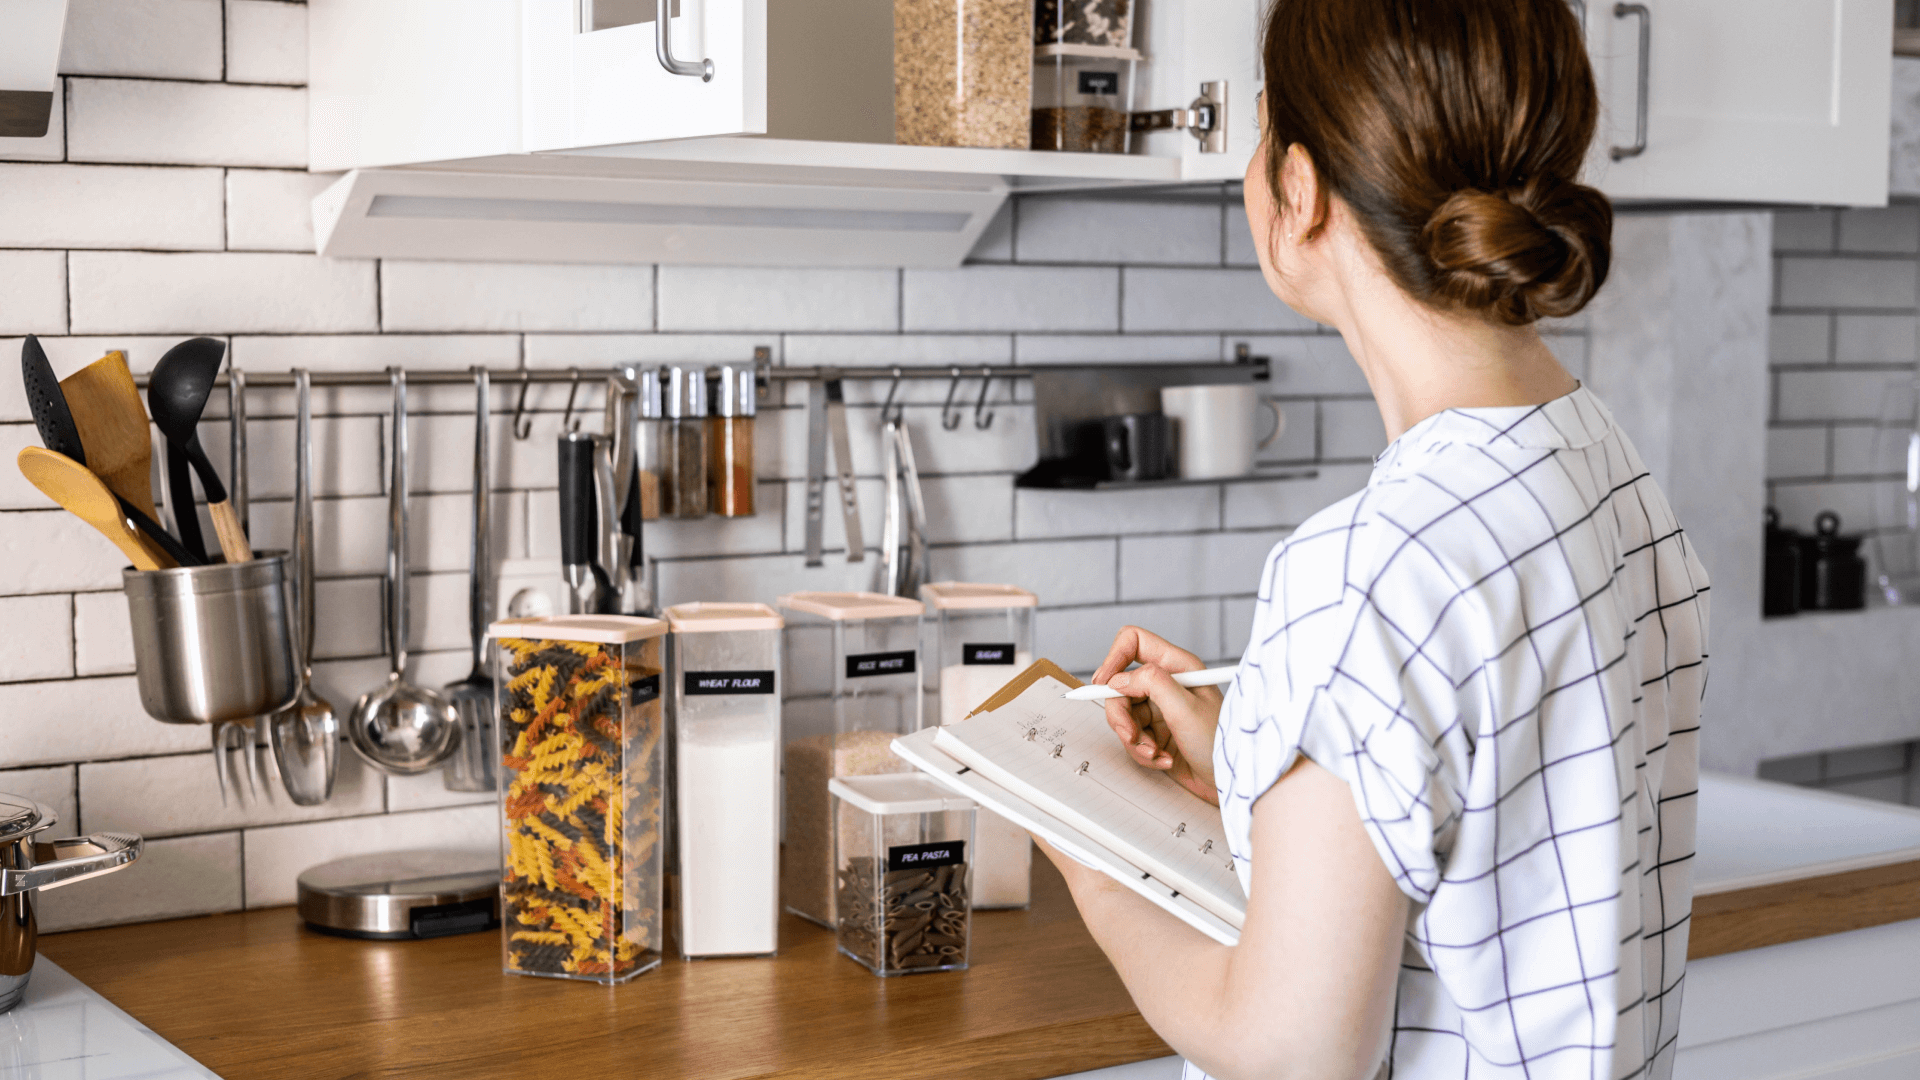 6 Ideias para organizar a cozinha de uma forma mais funcional